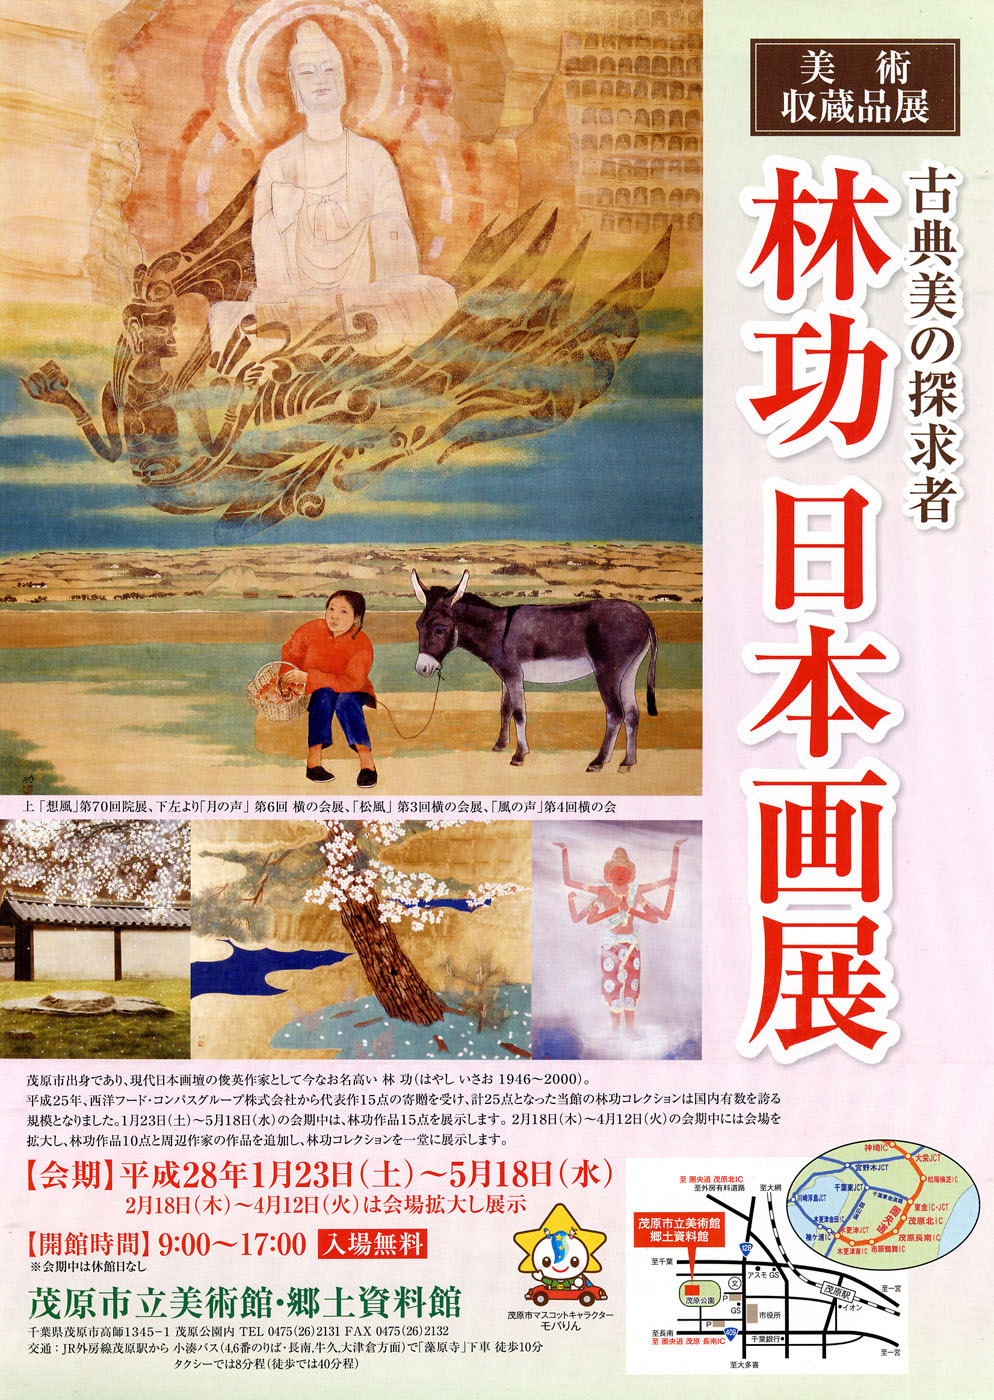 美術収蔵品展　林功　日本画展のポスター画像です。中国大陸の農村風景を描いた作品や、日本のお寺の夜桜の風景作品などを掲載しています。